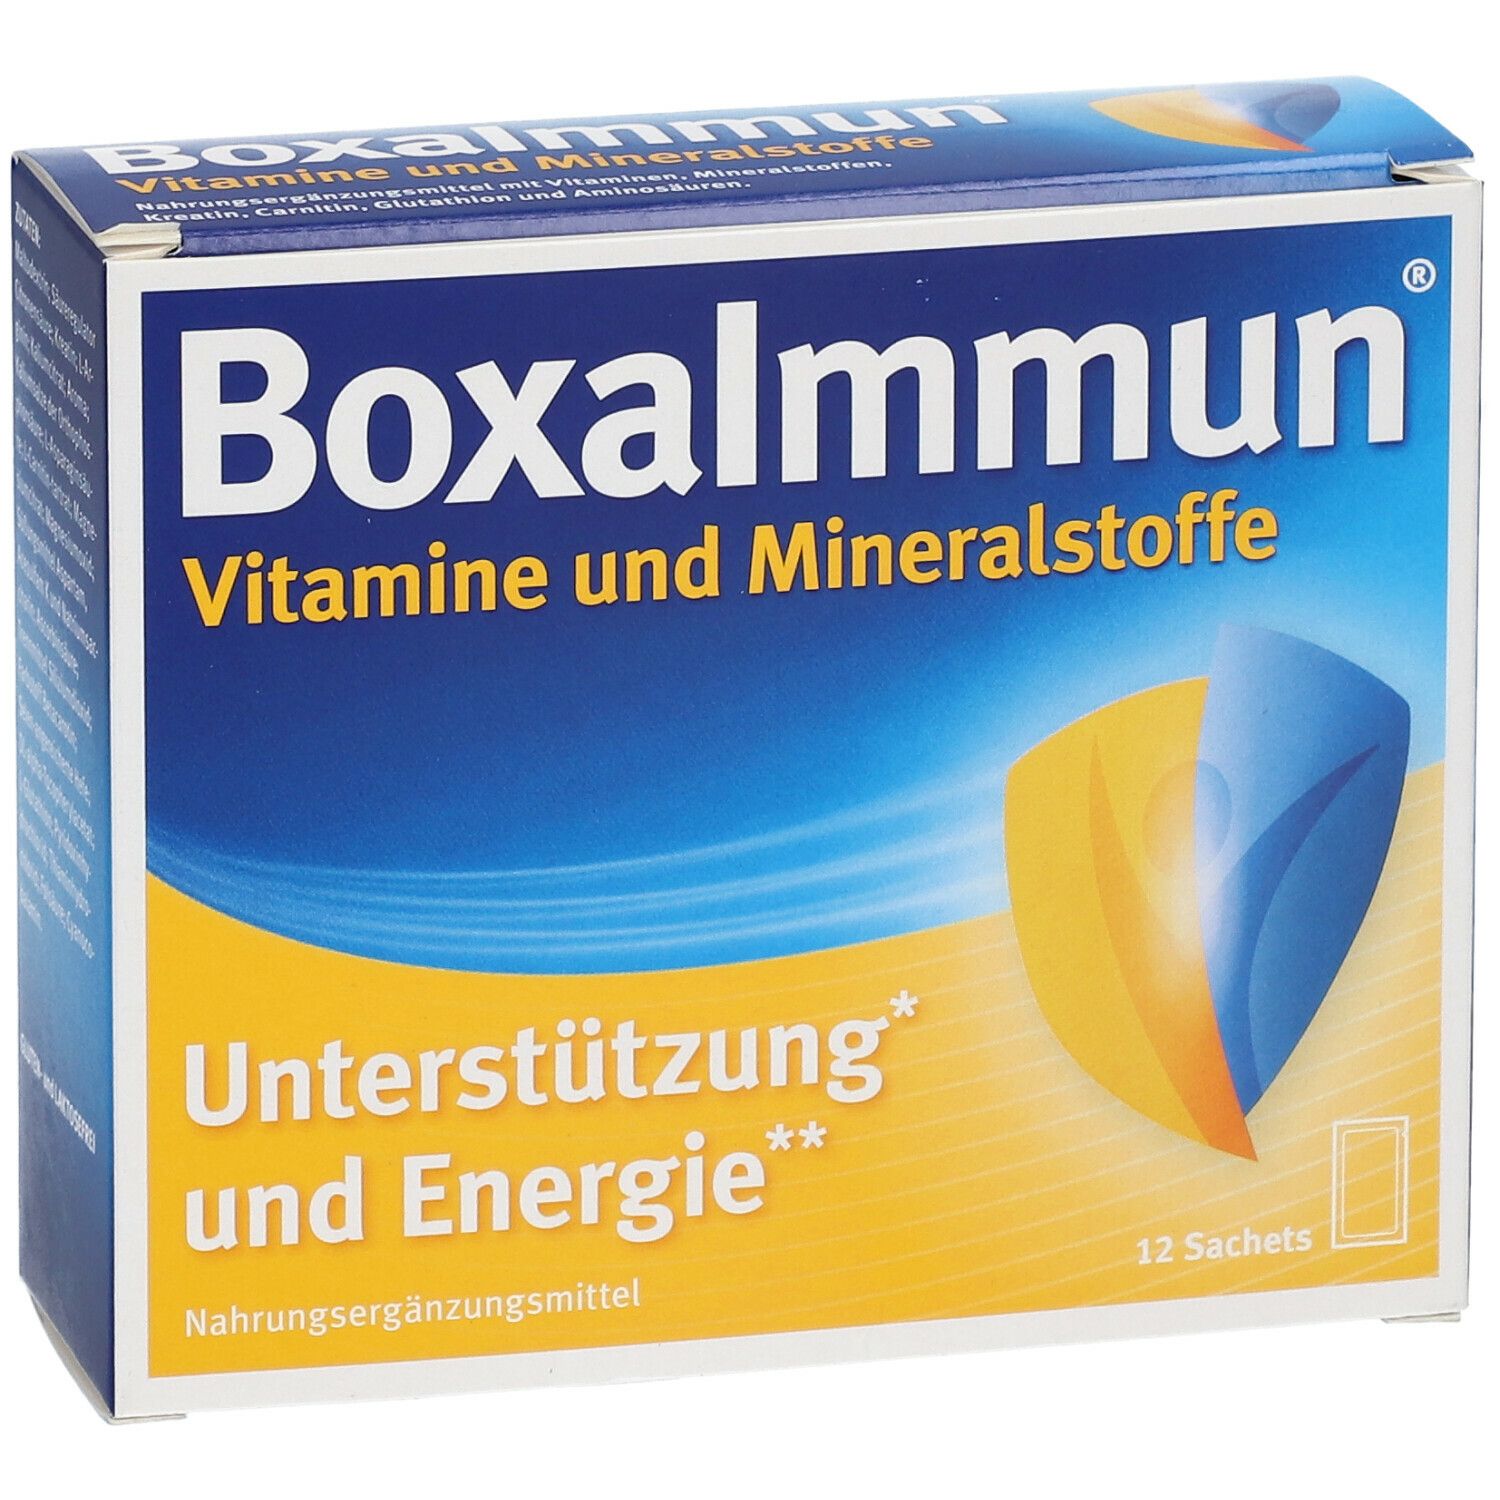 BoxaImmun® Vitamine und Mineralstoffe